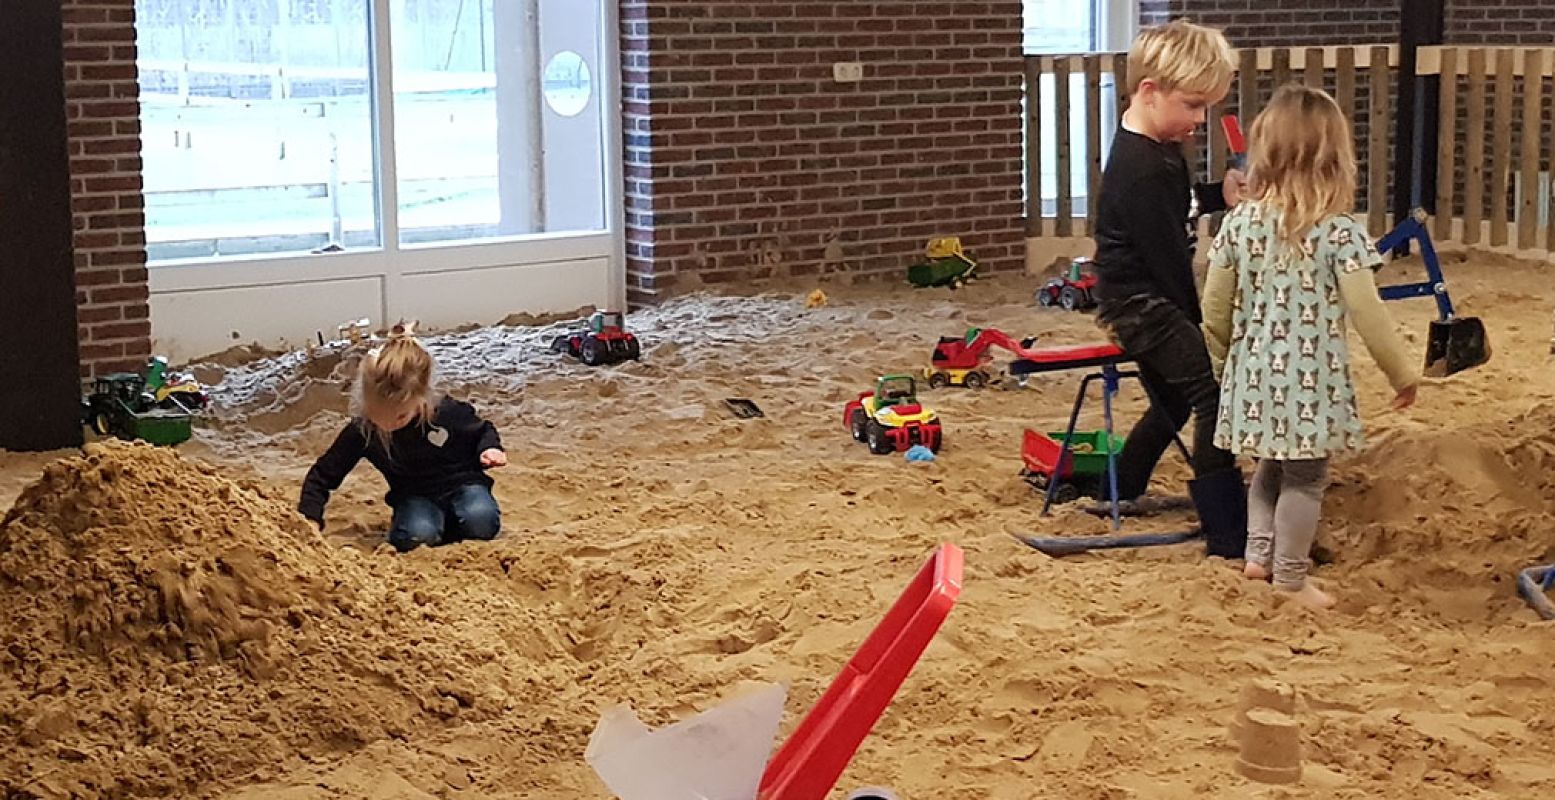 Lekker spelen bij speel- en recreatieboerderij De Flierefluiter in de indoor zandbak vol speeltjes. Foto: De Flierefluiter